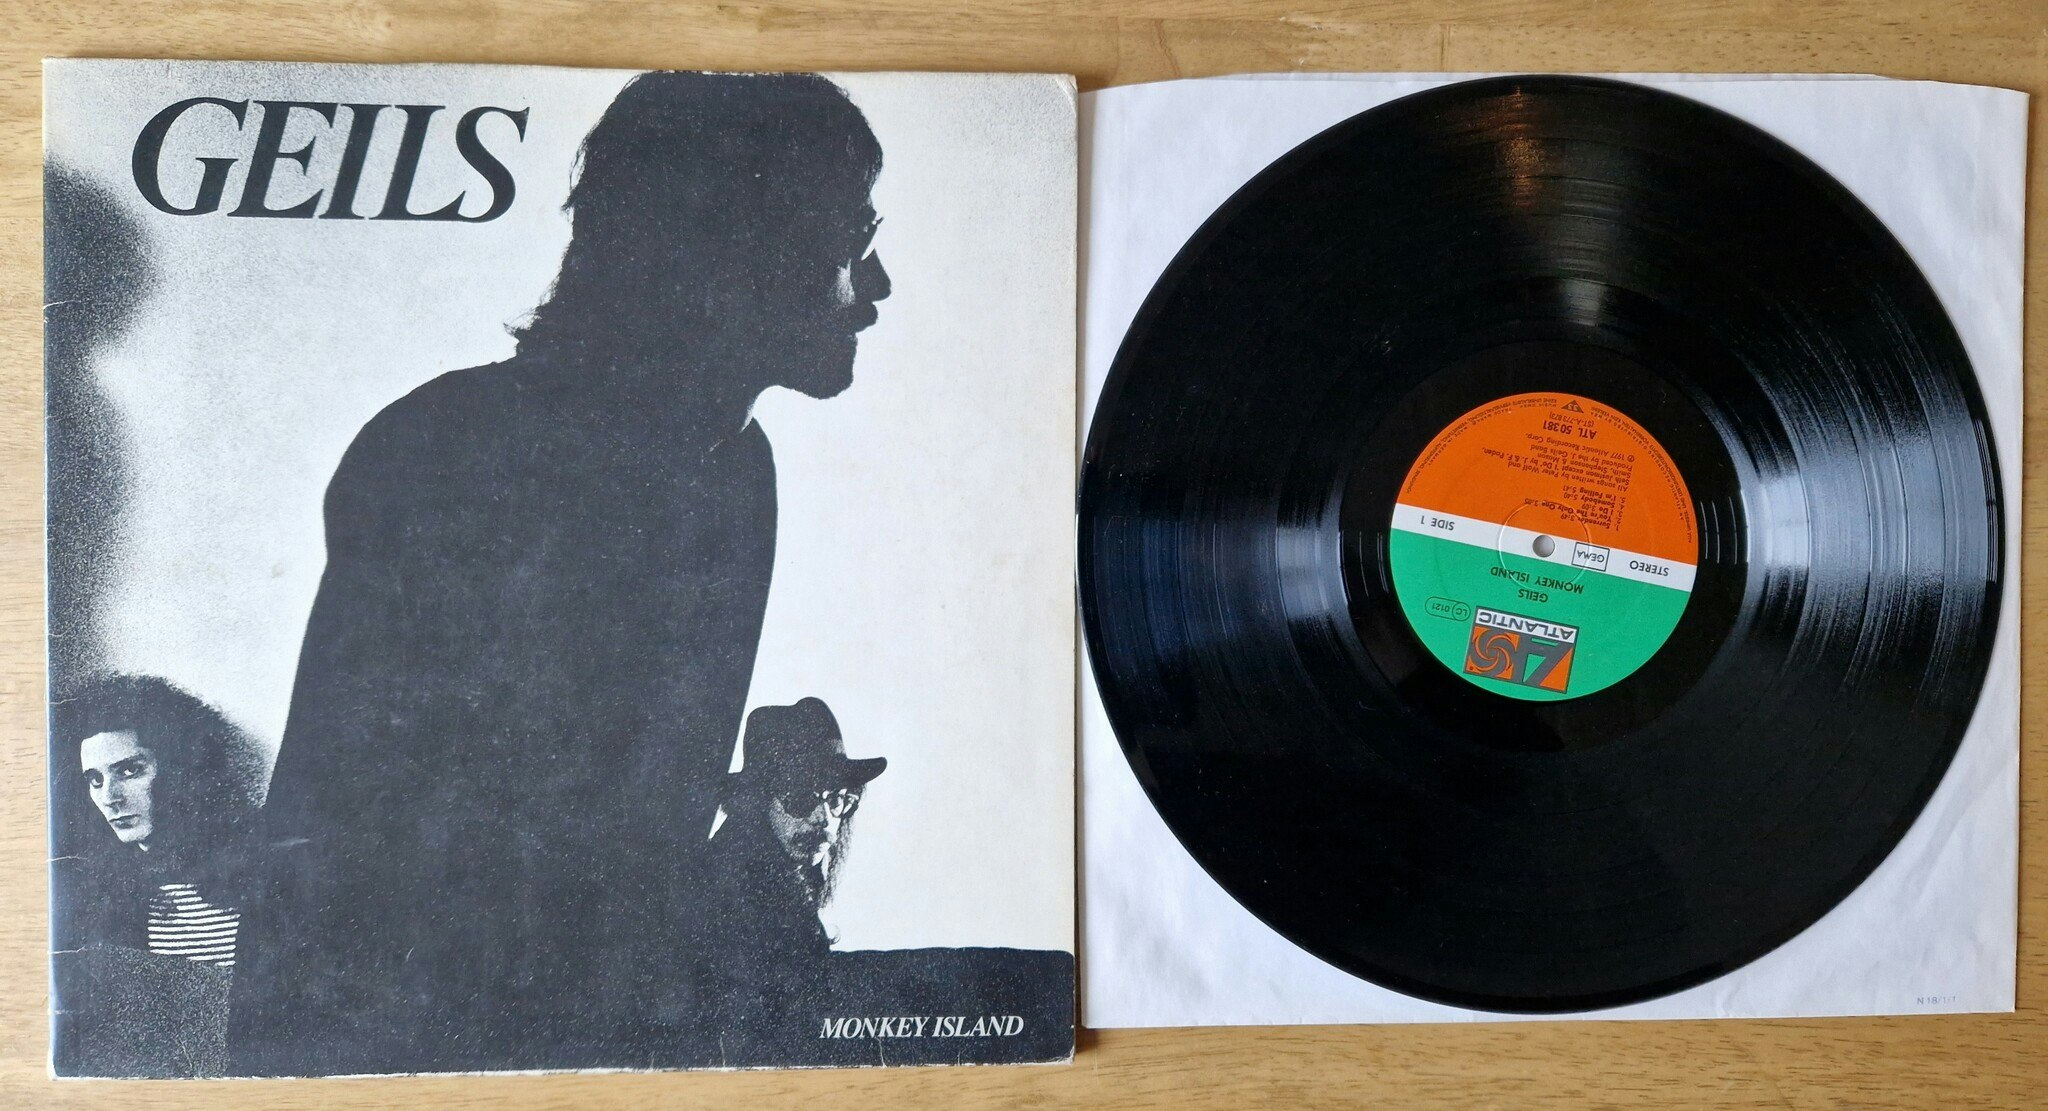 Geils, Monkey island. Vinyl LP